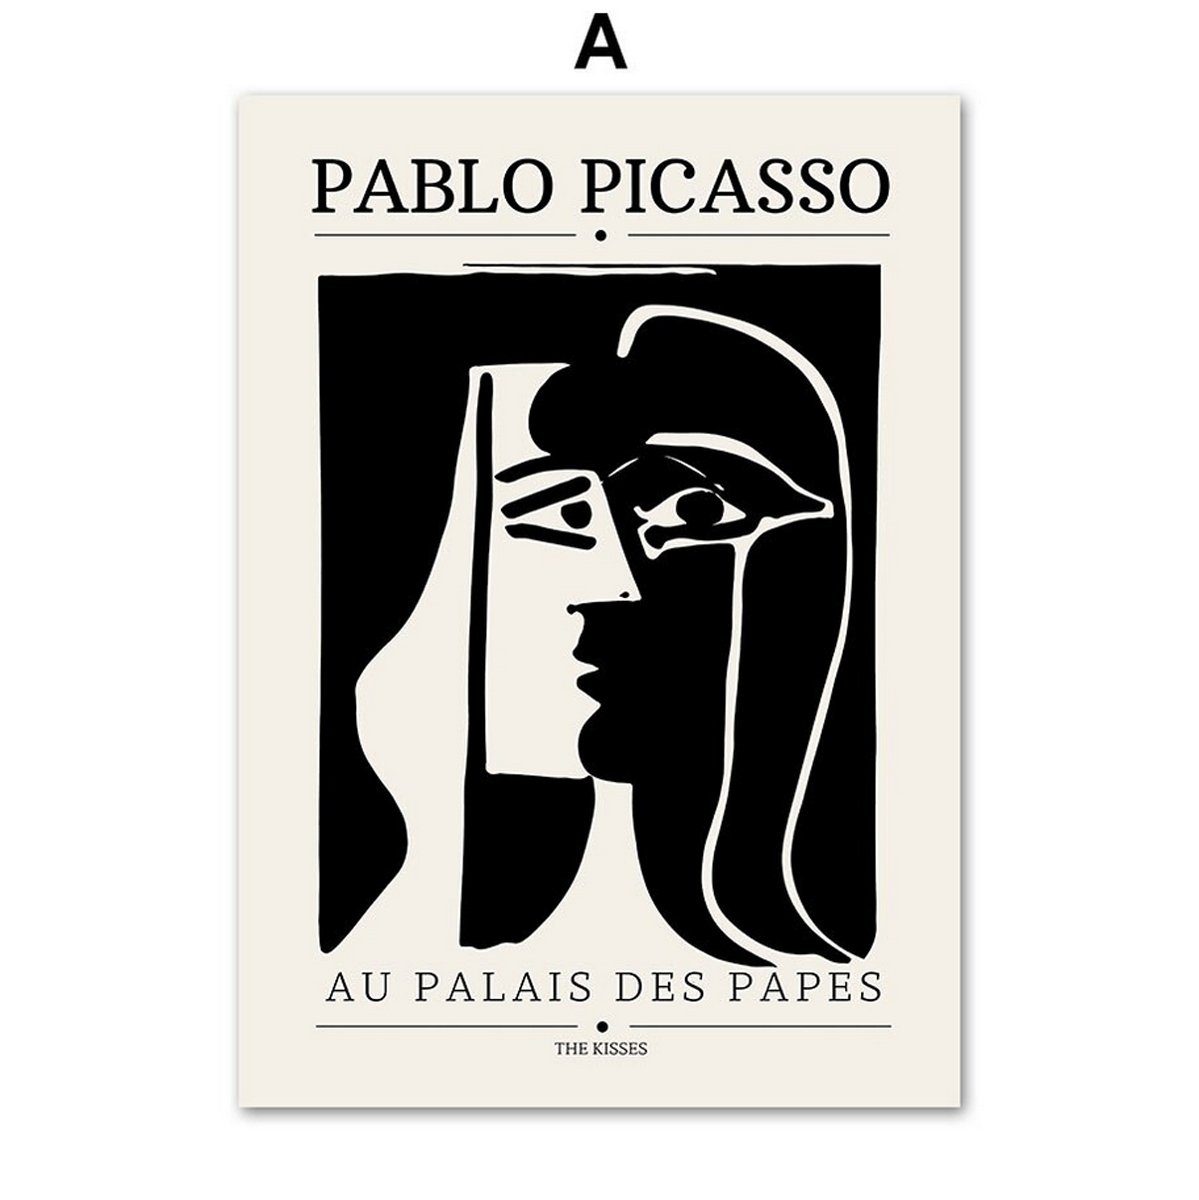 TPFLiving Kunstdruck (OHNE RAHMEN) Poster - Leinwand - Wandbild, Bauhaus - Geometrische Formen - (Henri Matisse - Pablo Picasso), Farben: schwarz und weiß - Größe 10x15cm